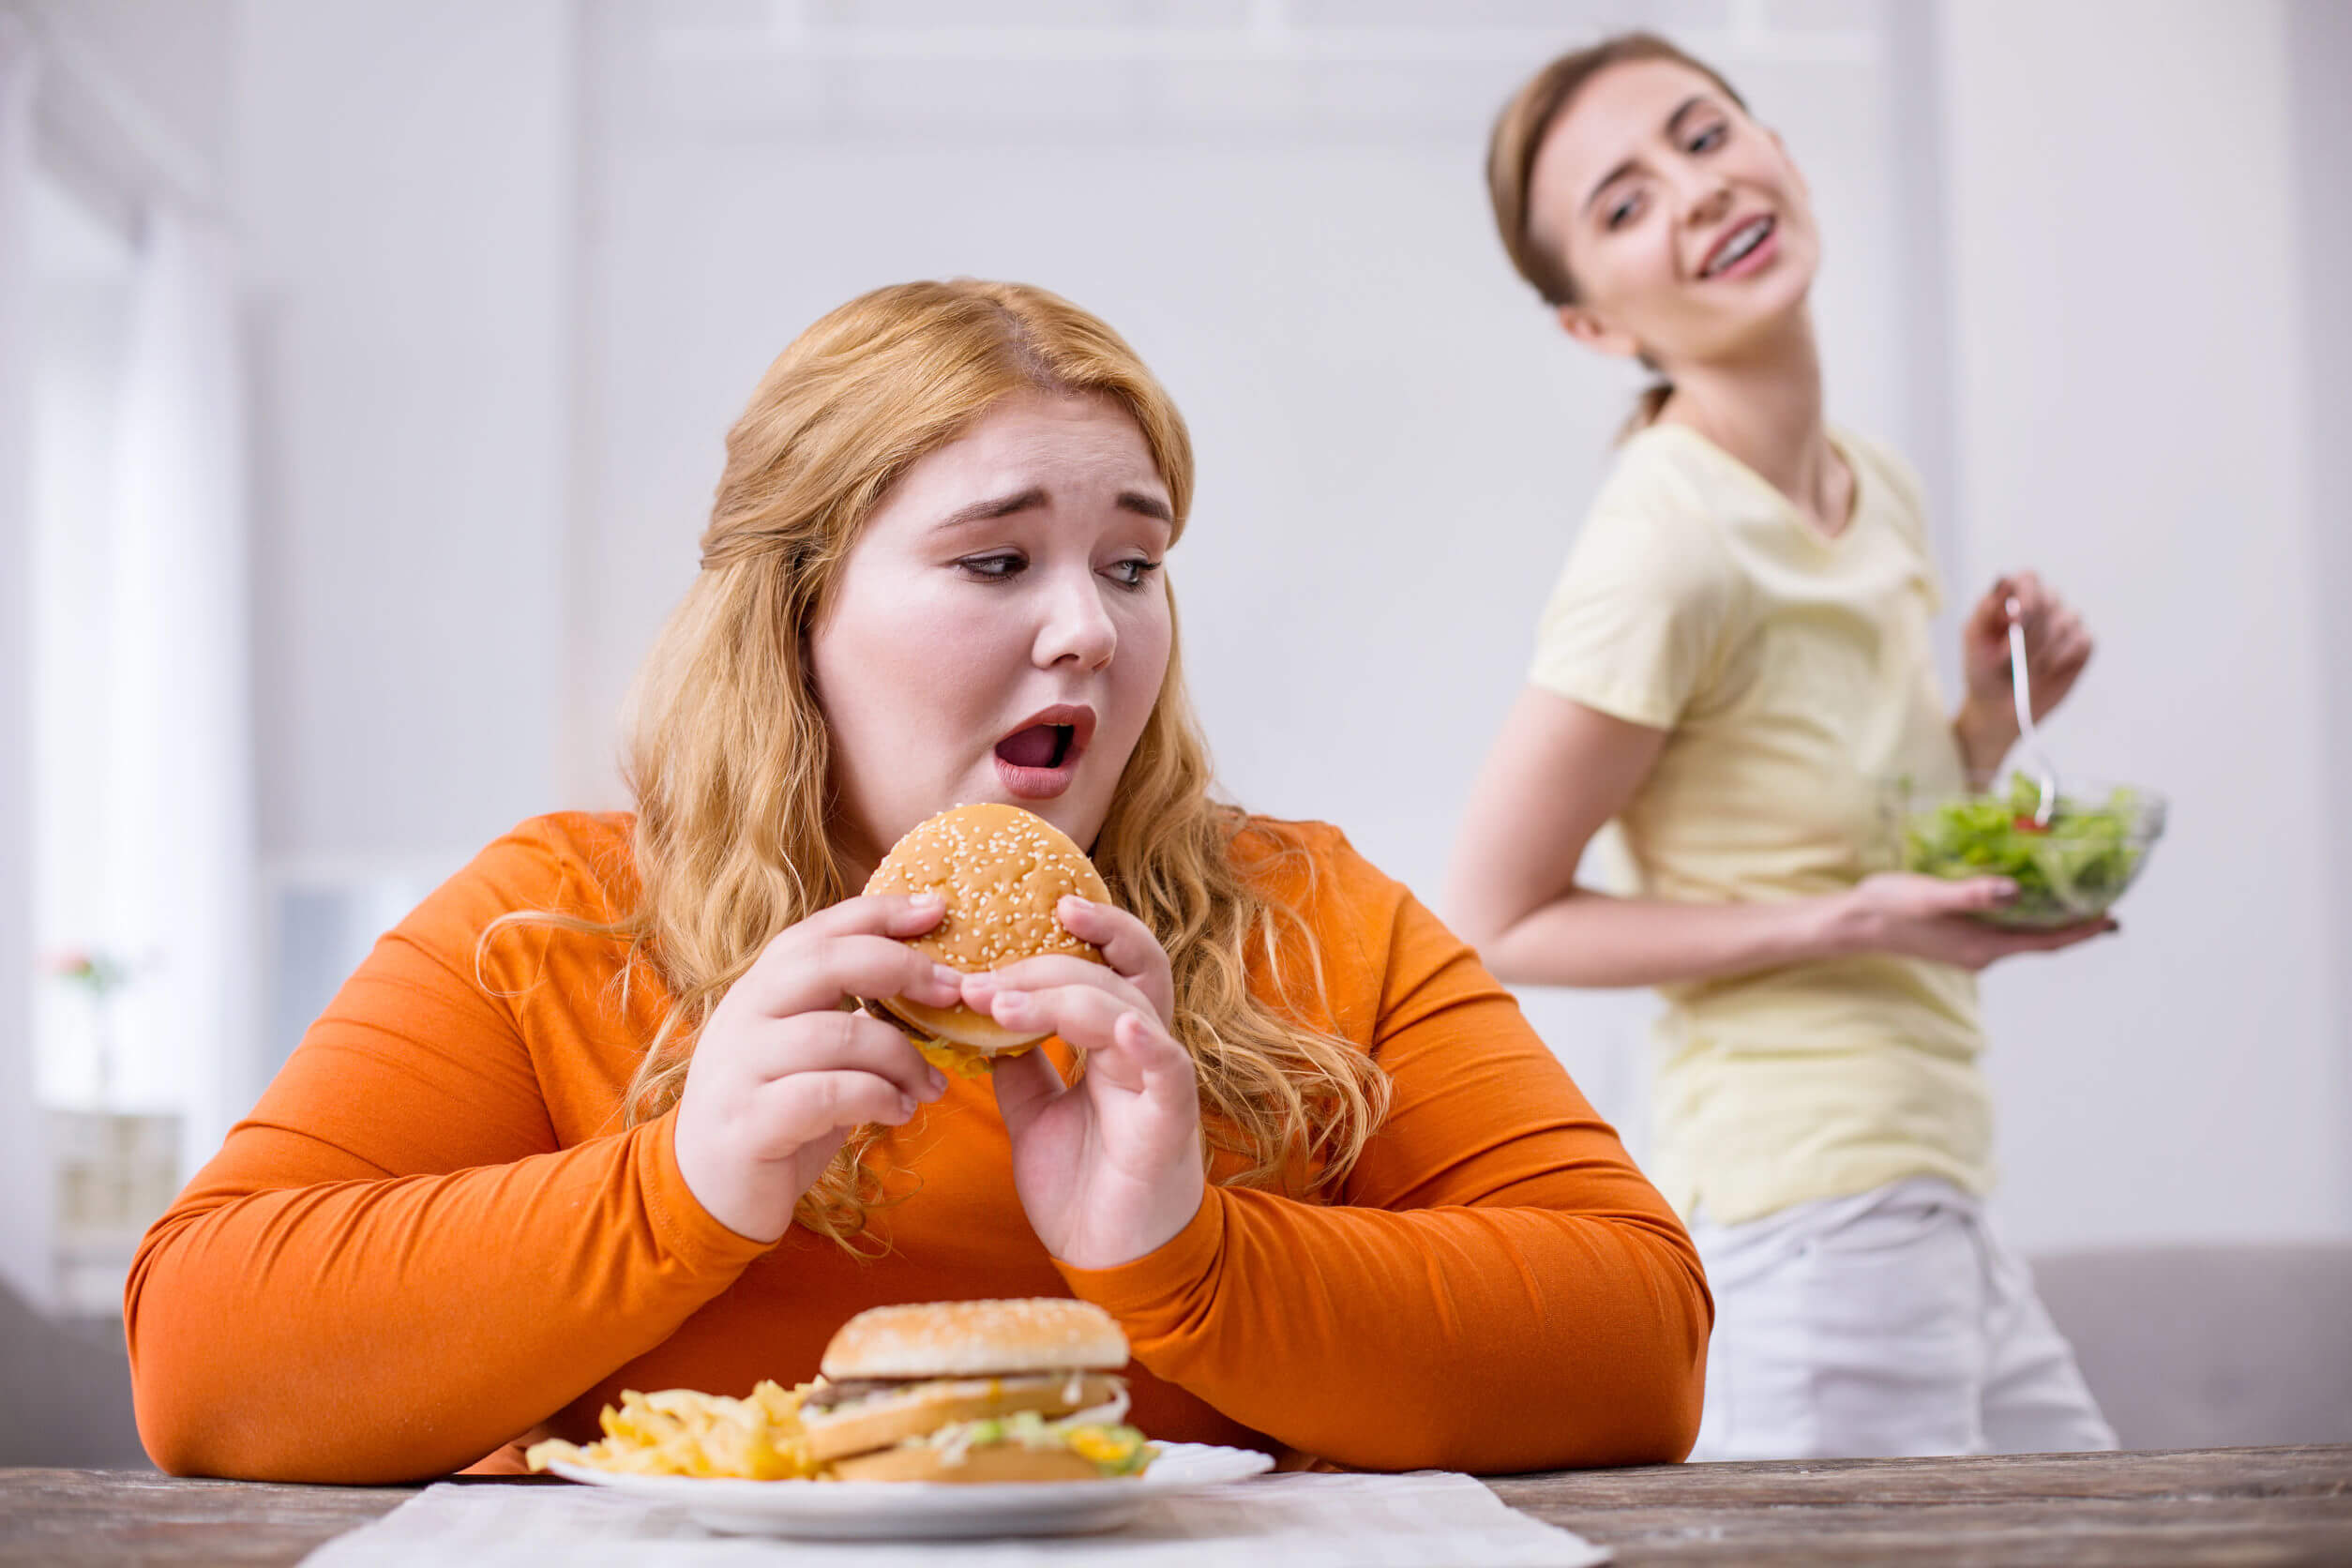 A comida do tipo junk food pode promover o ganho de peso.